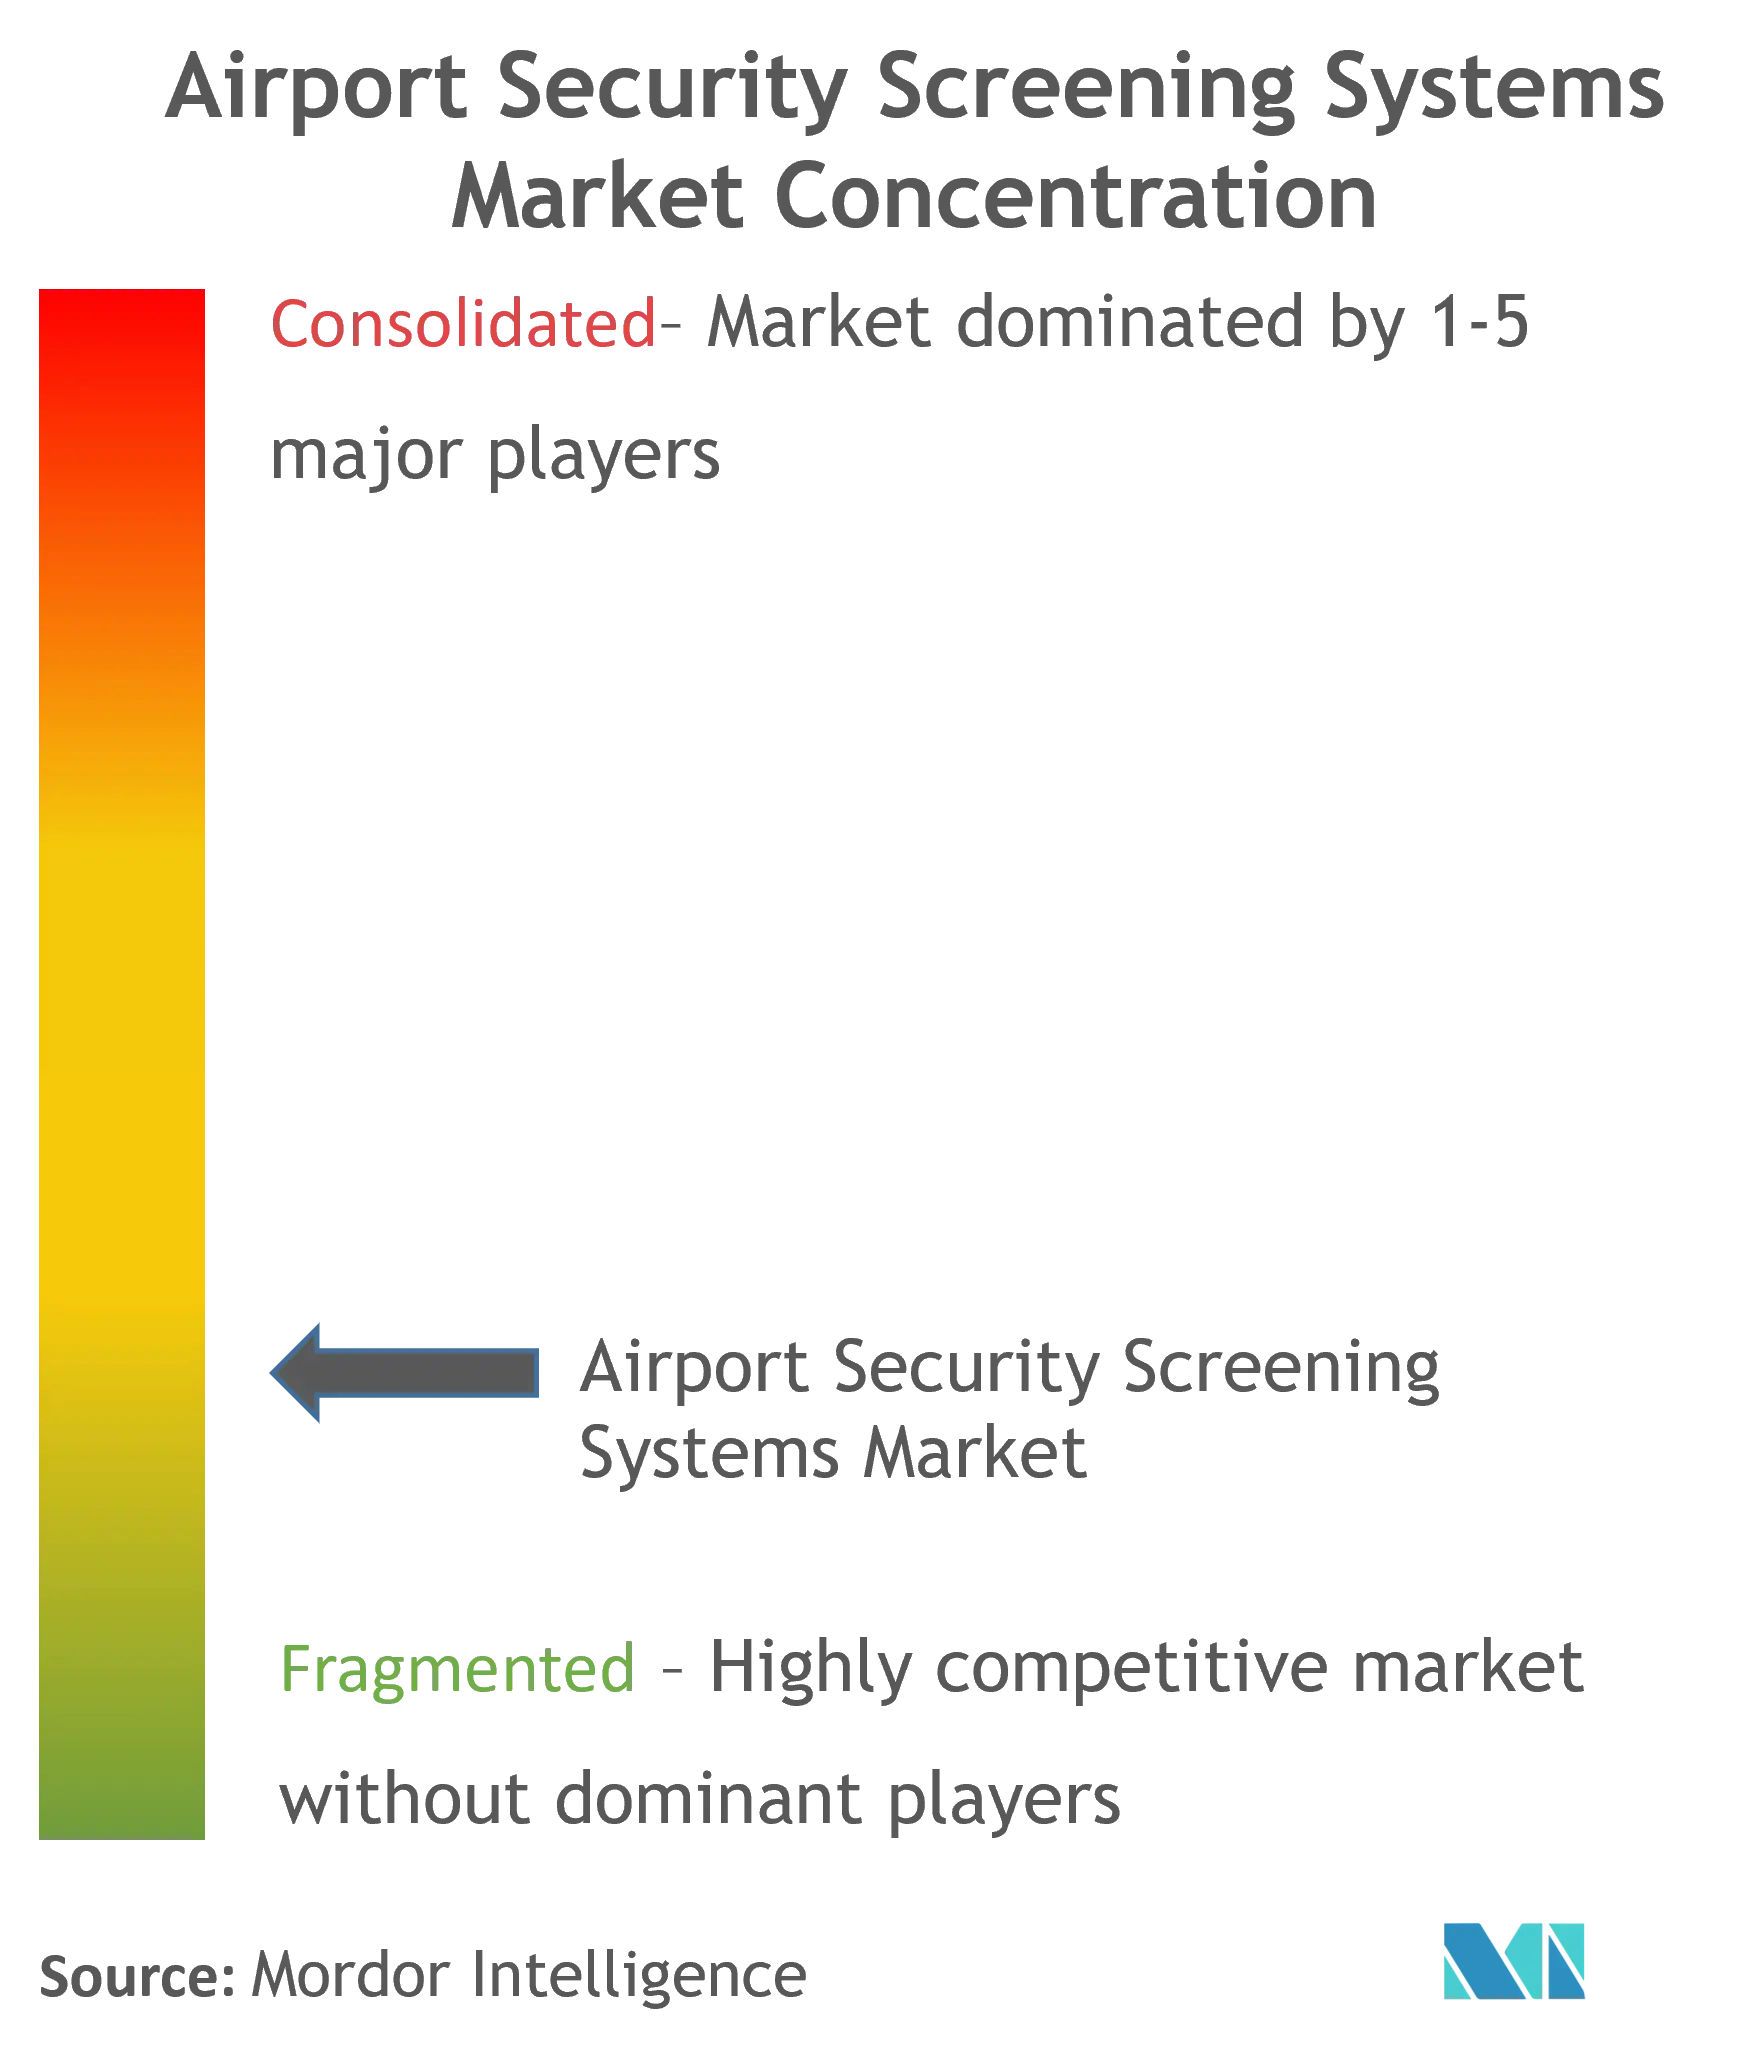 공항 보안 검색 시스템 시장 농도